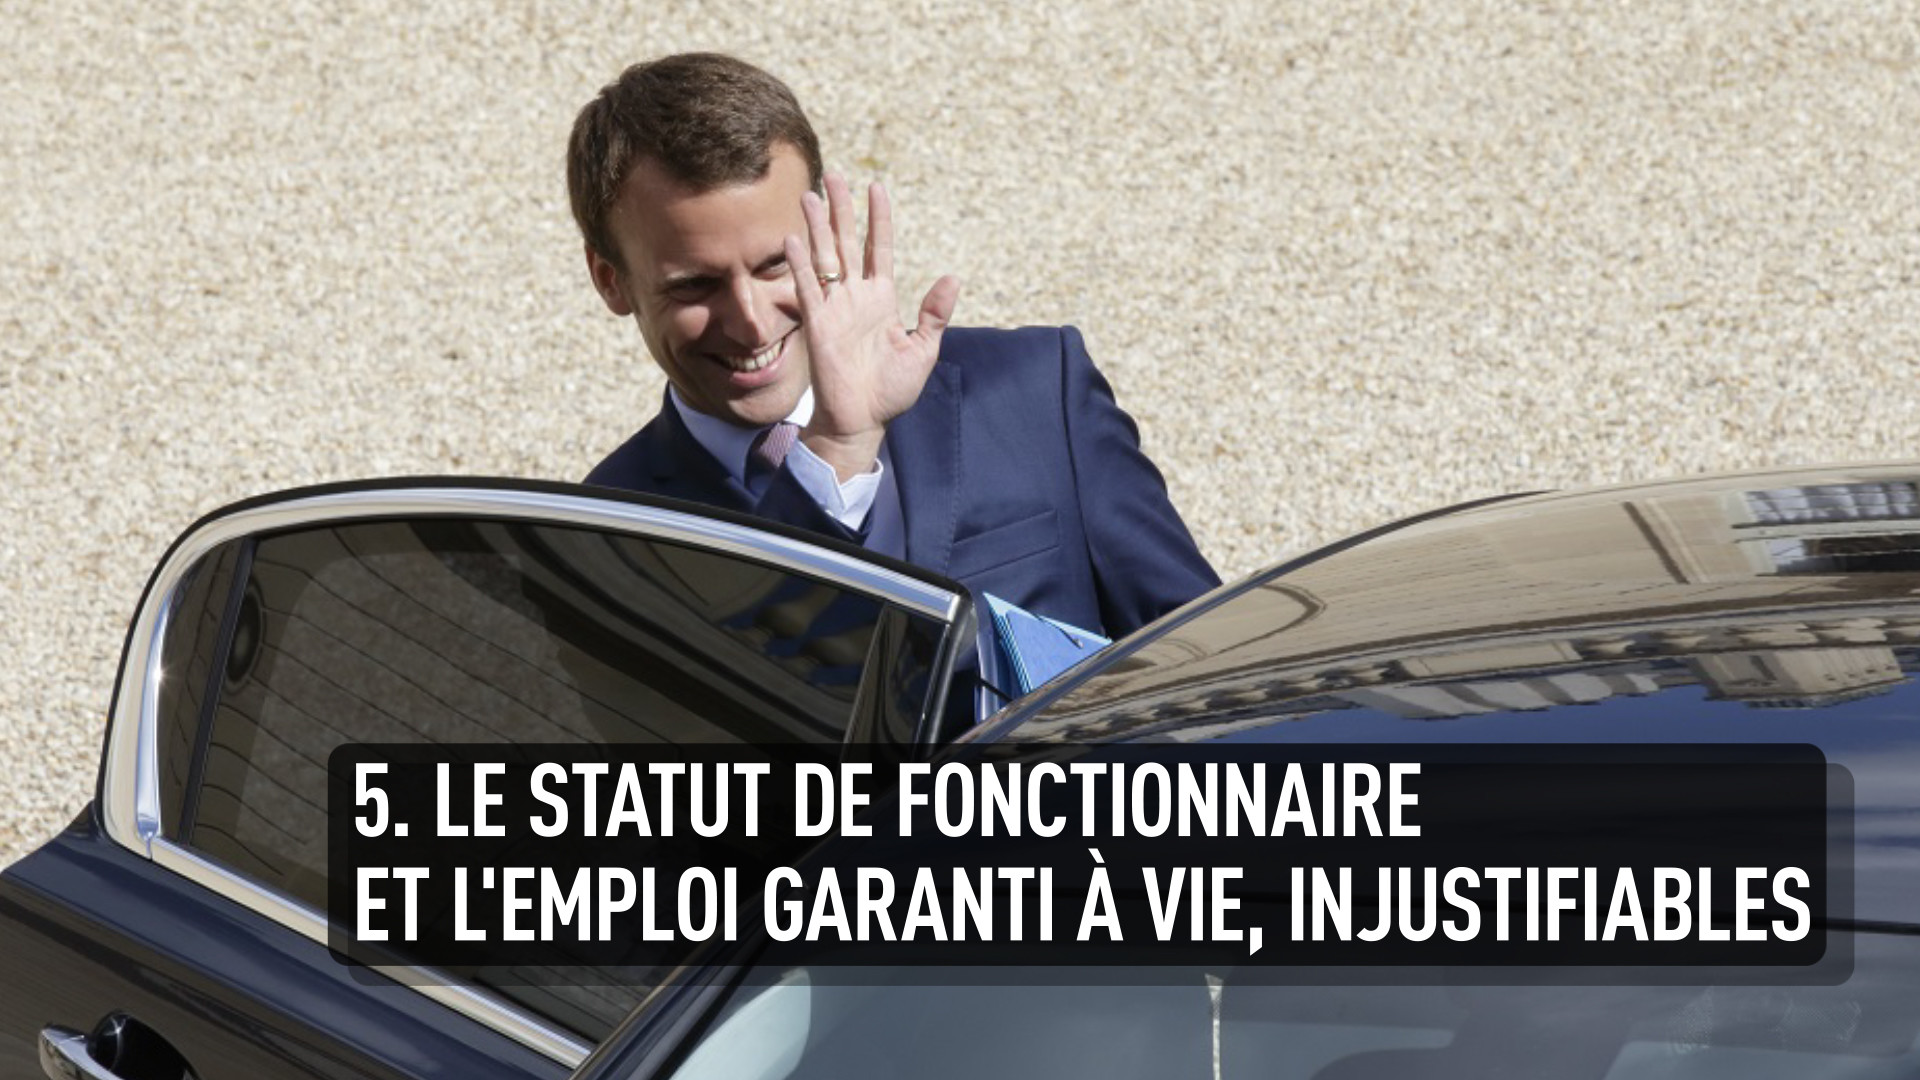 Les cinq déclarations les plus ultralibérales du ministre socialiste Emmanuel Macron